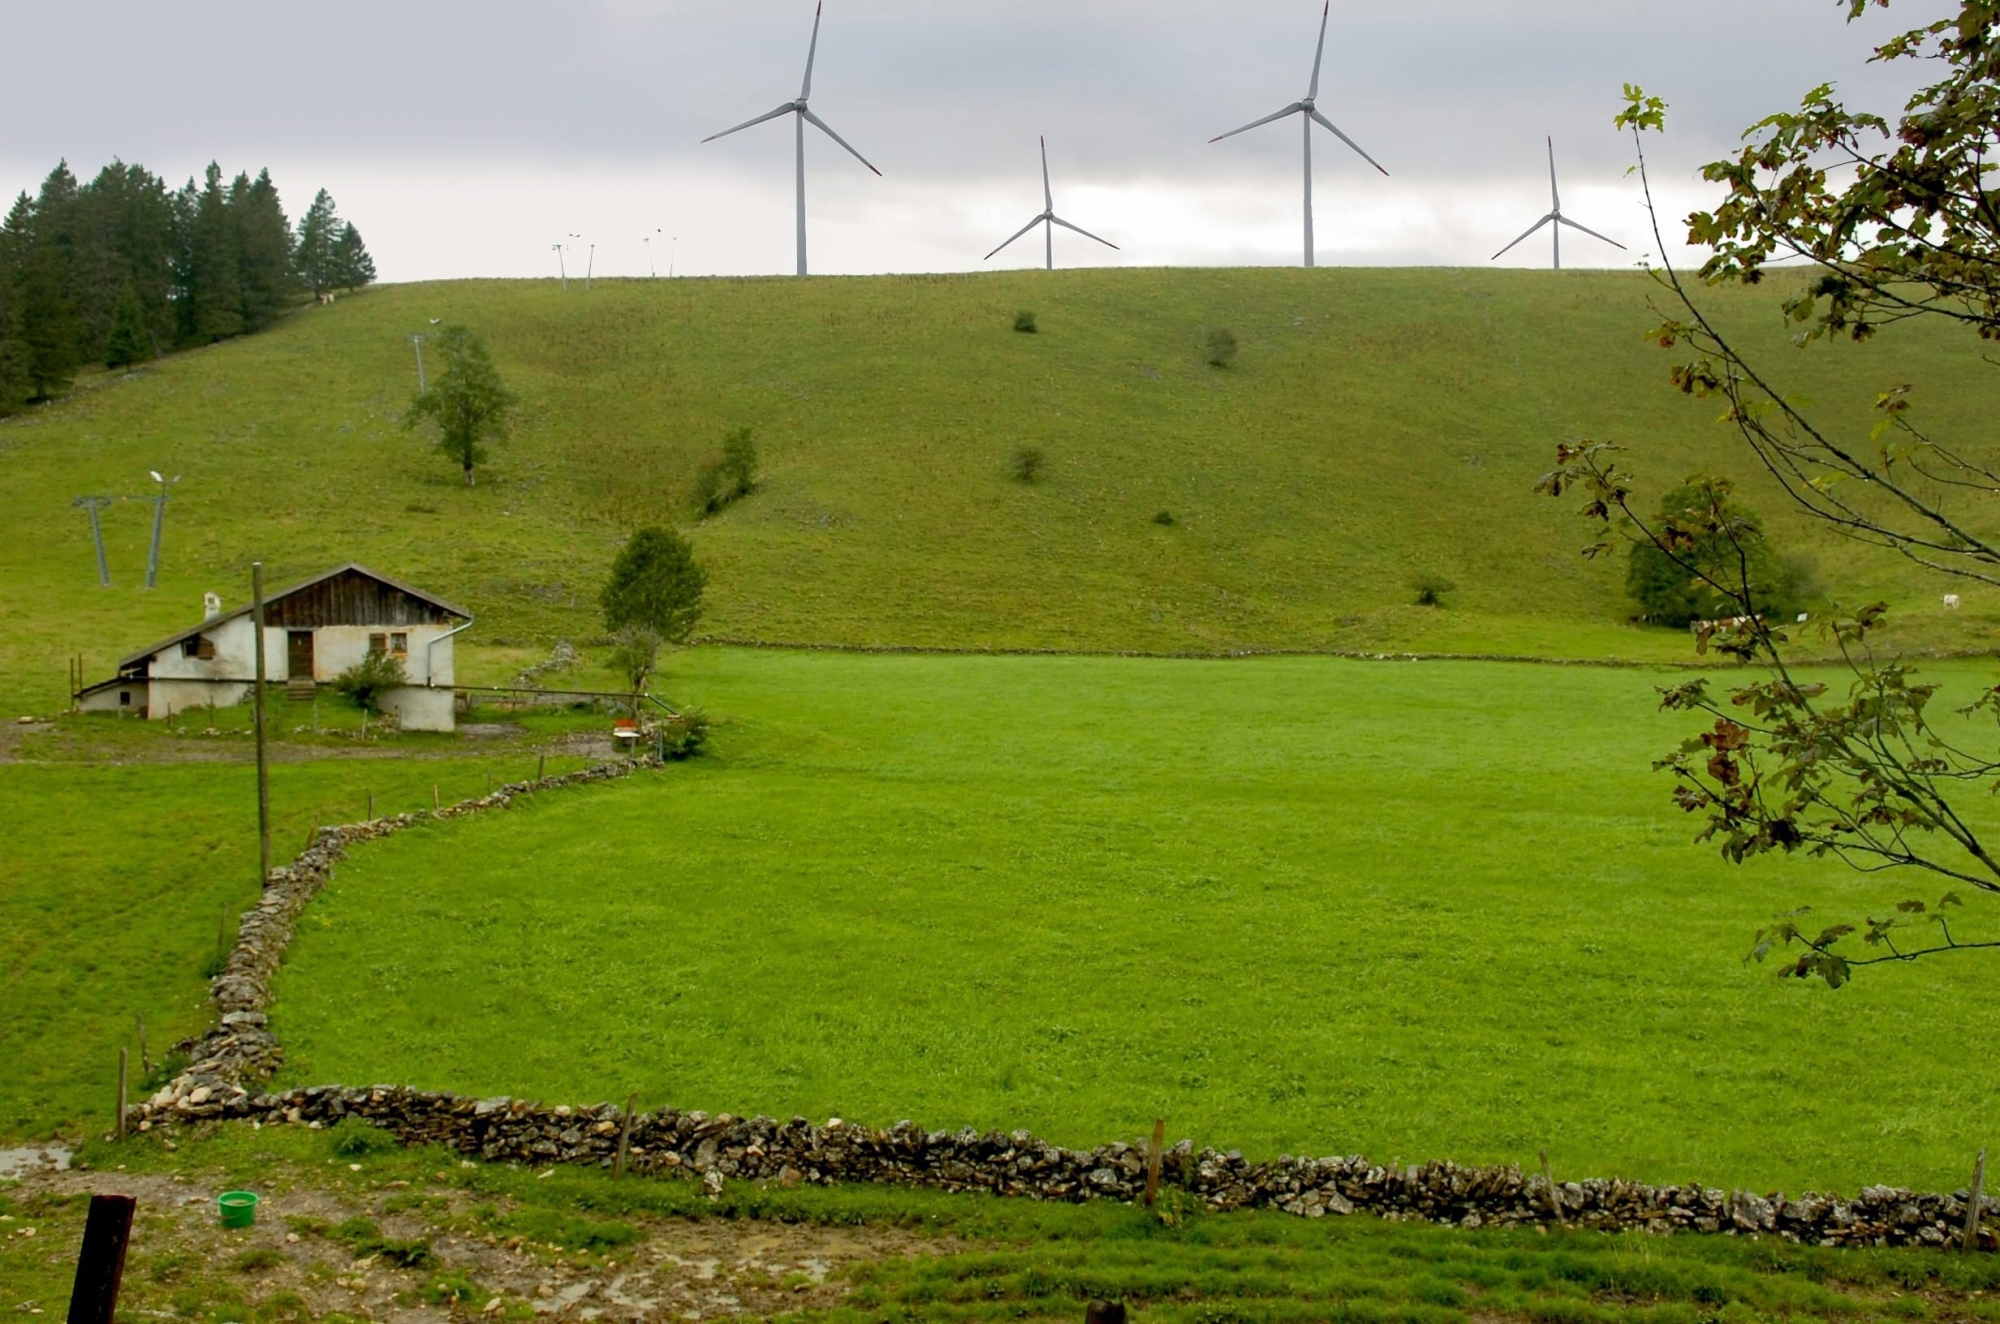 Le site d'implantation au Crêt-Meuron prévoit d'accueillir 7 éoliennes. (photomontage)